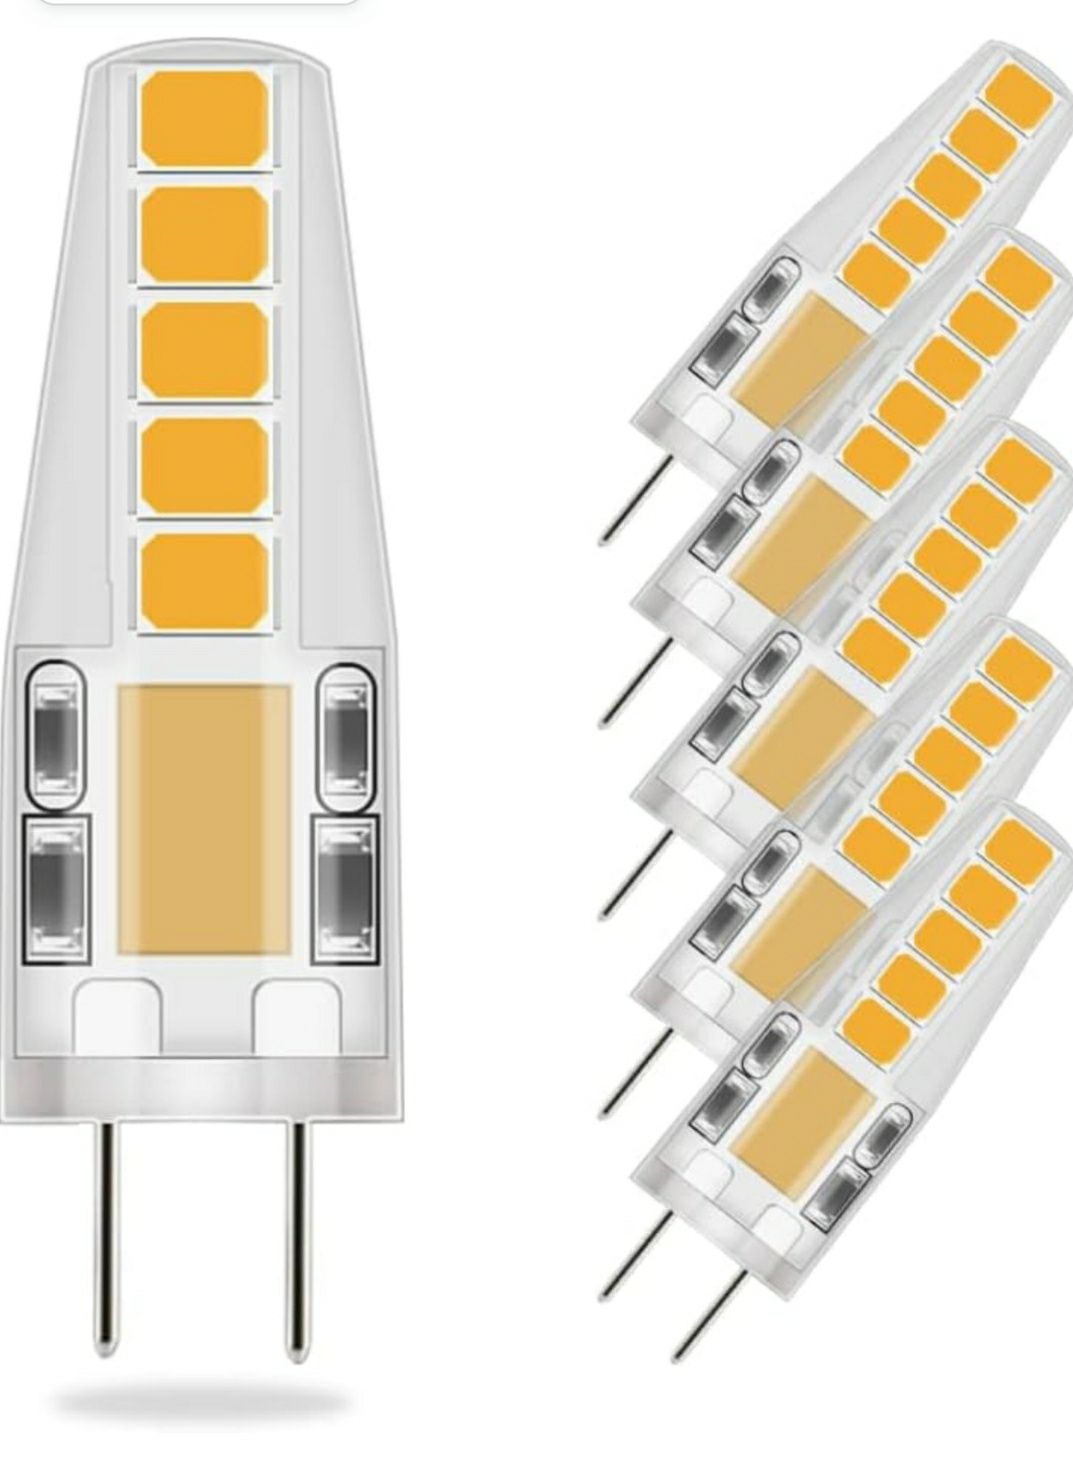 6x żarówek LED G4, ciepła biel, 36mm x 9mm, bardziej tradycyjne wymiar